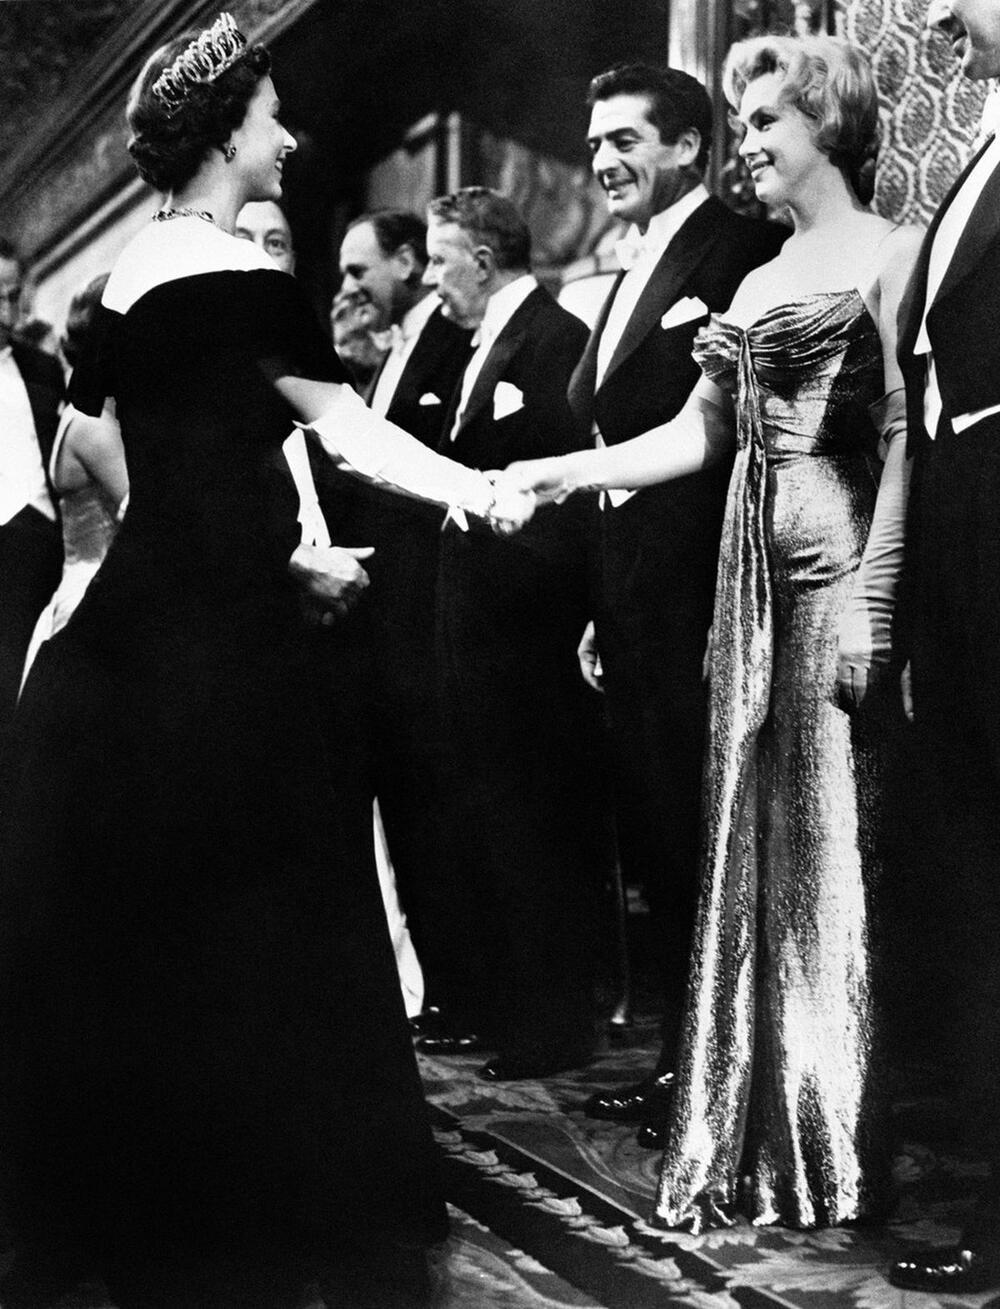 Susret kraljice elizabete ii i merilin monro 1956. godine